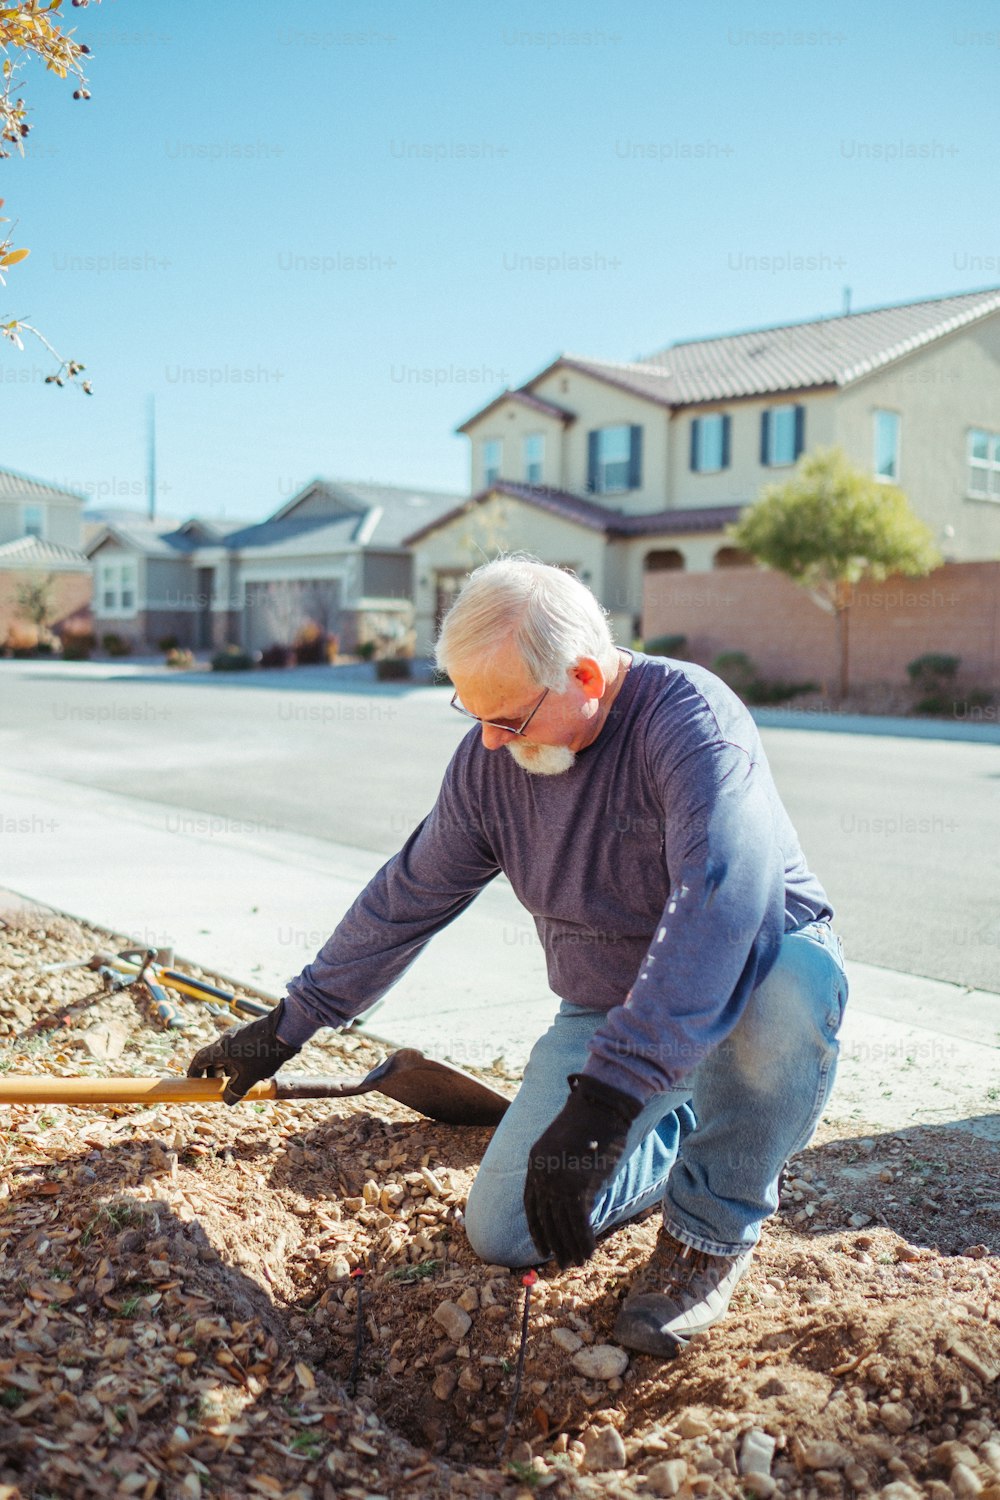 Un homme creuse un trou dans le sol